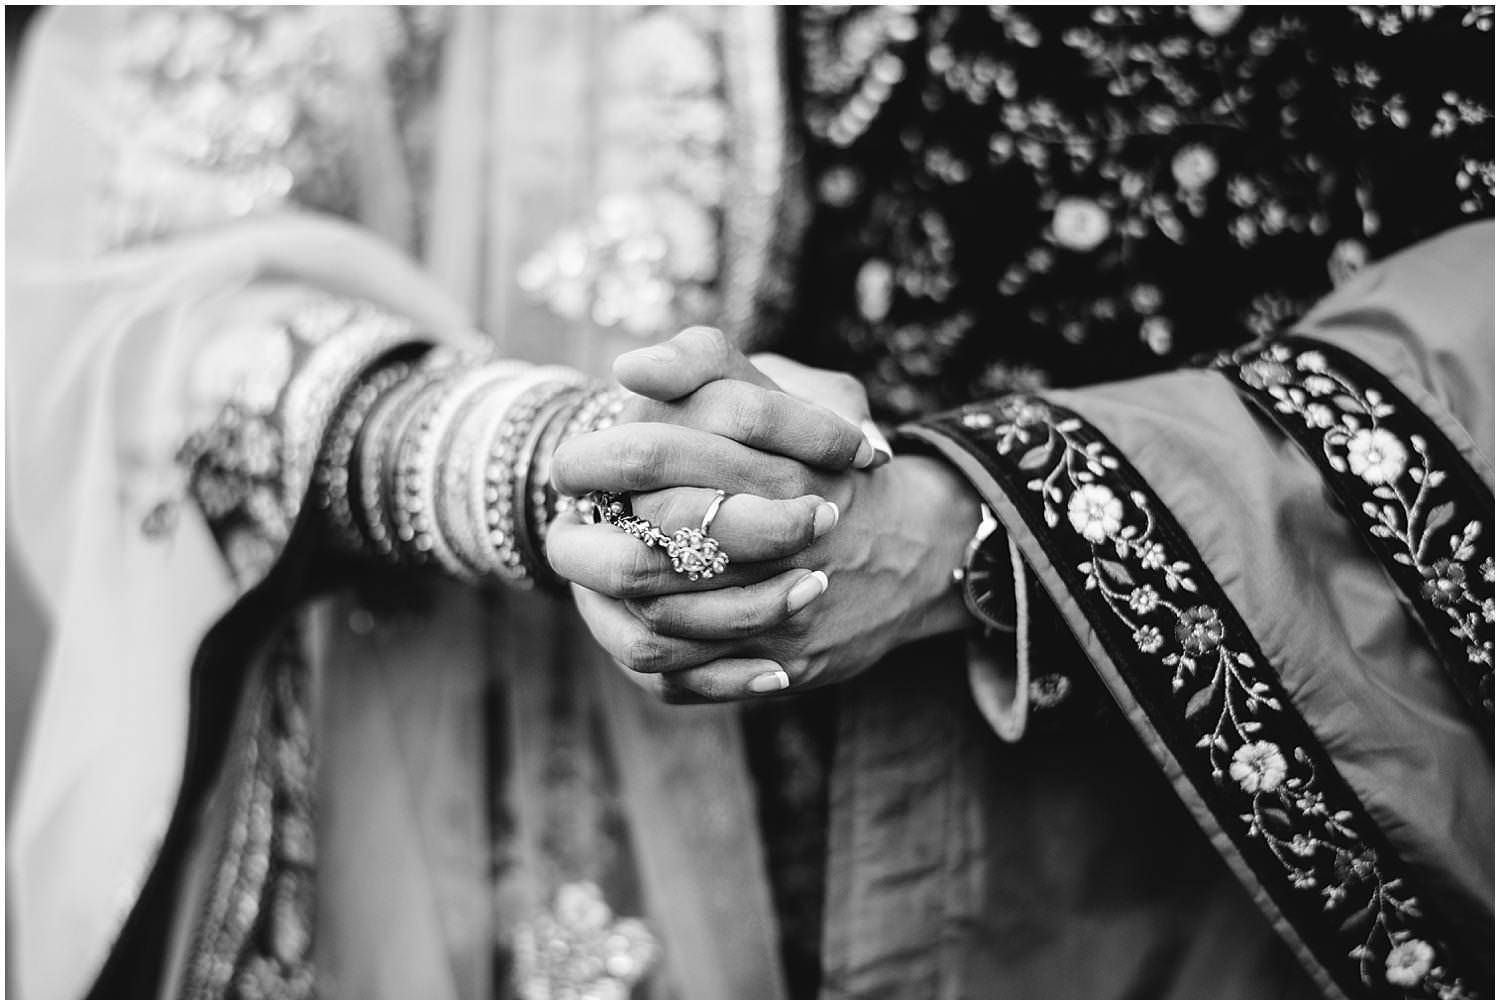 matrimonio indiano hindu in italia